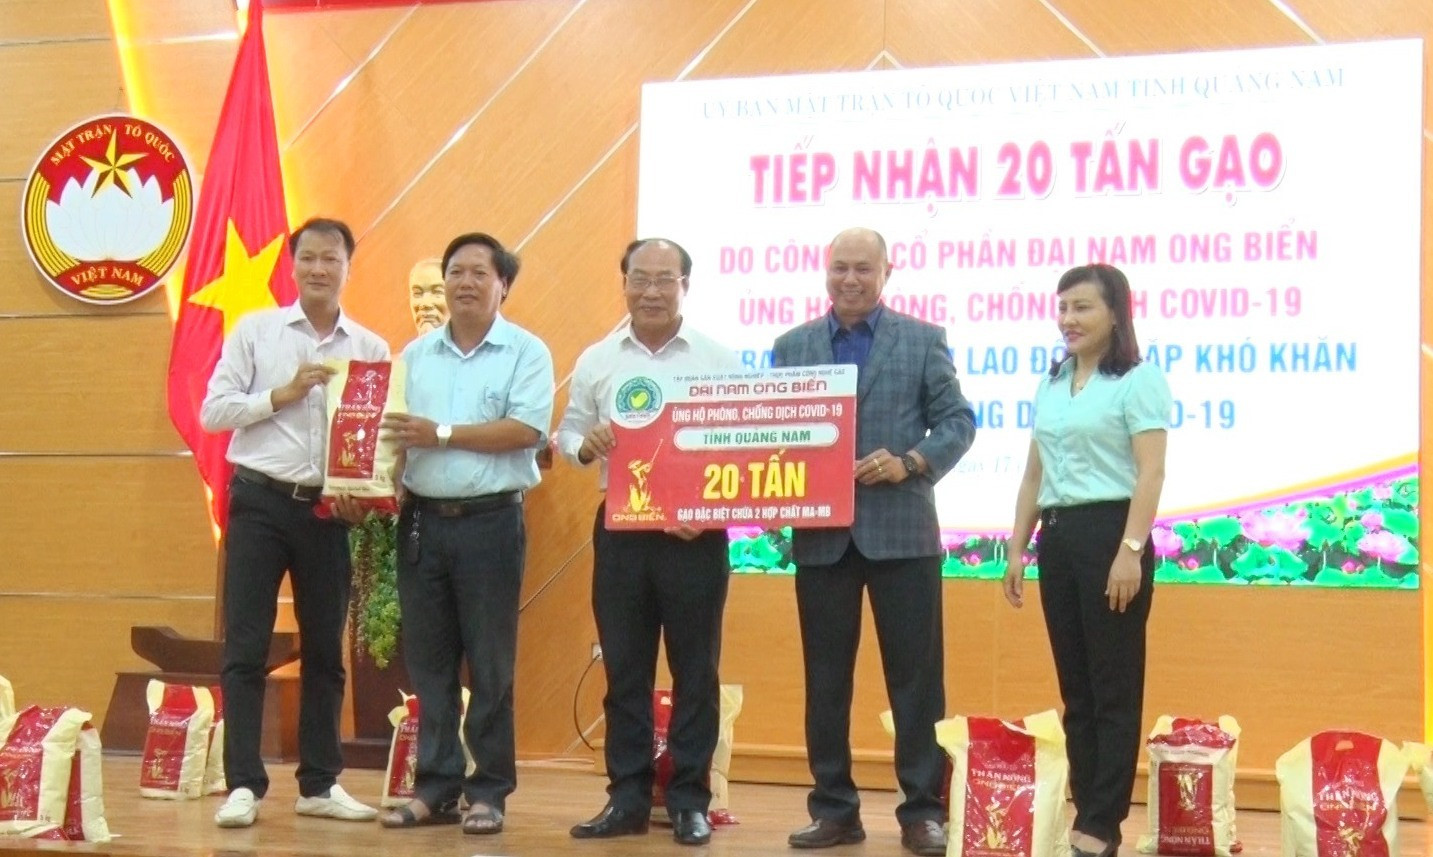 Tập đoàn Sản xuất nông nghiệp - thực phẩm công nghệ cao Đại Nam Ong Biển trao tặng Quảng Nam 20 tấn gạo. Ảnh: Đ.ĐẠO